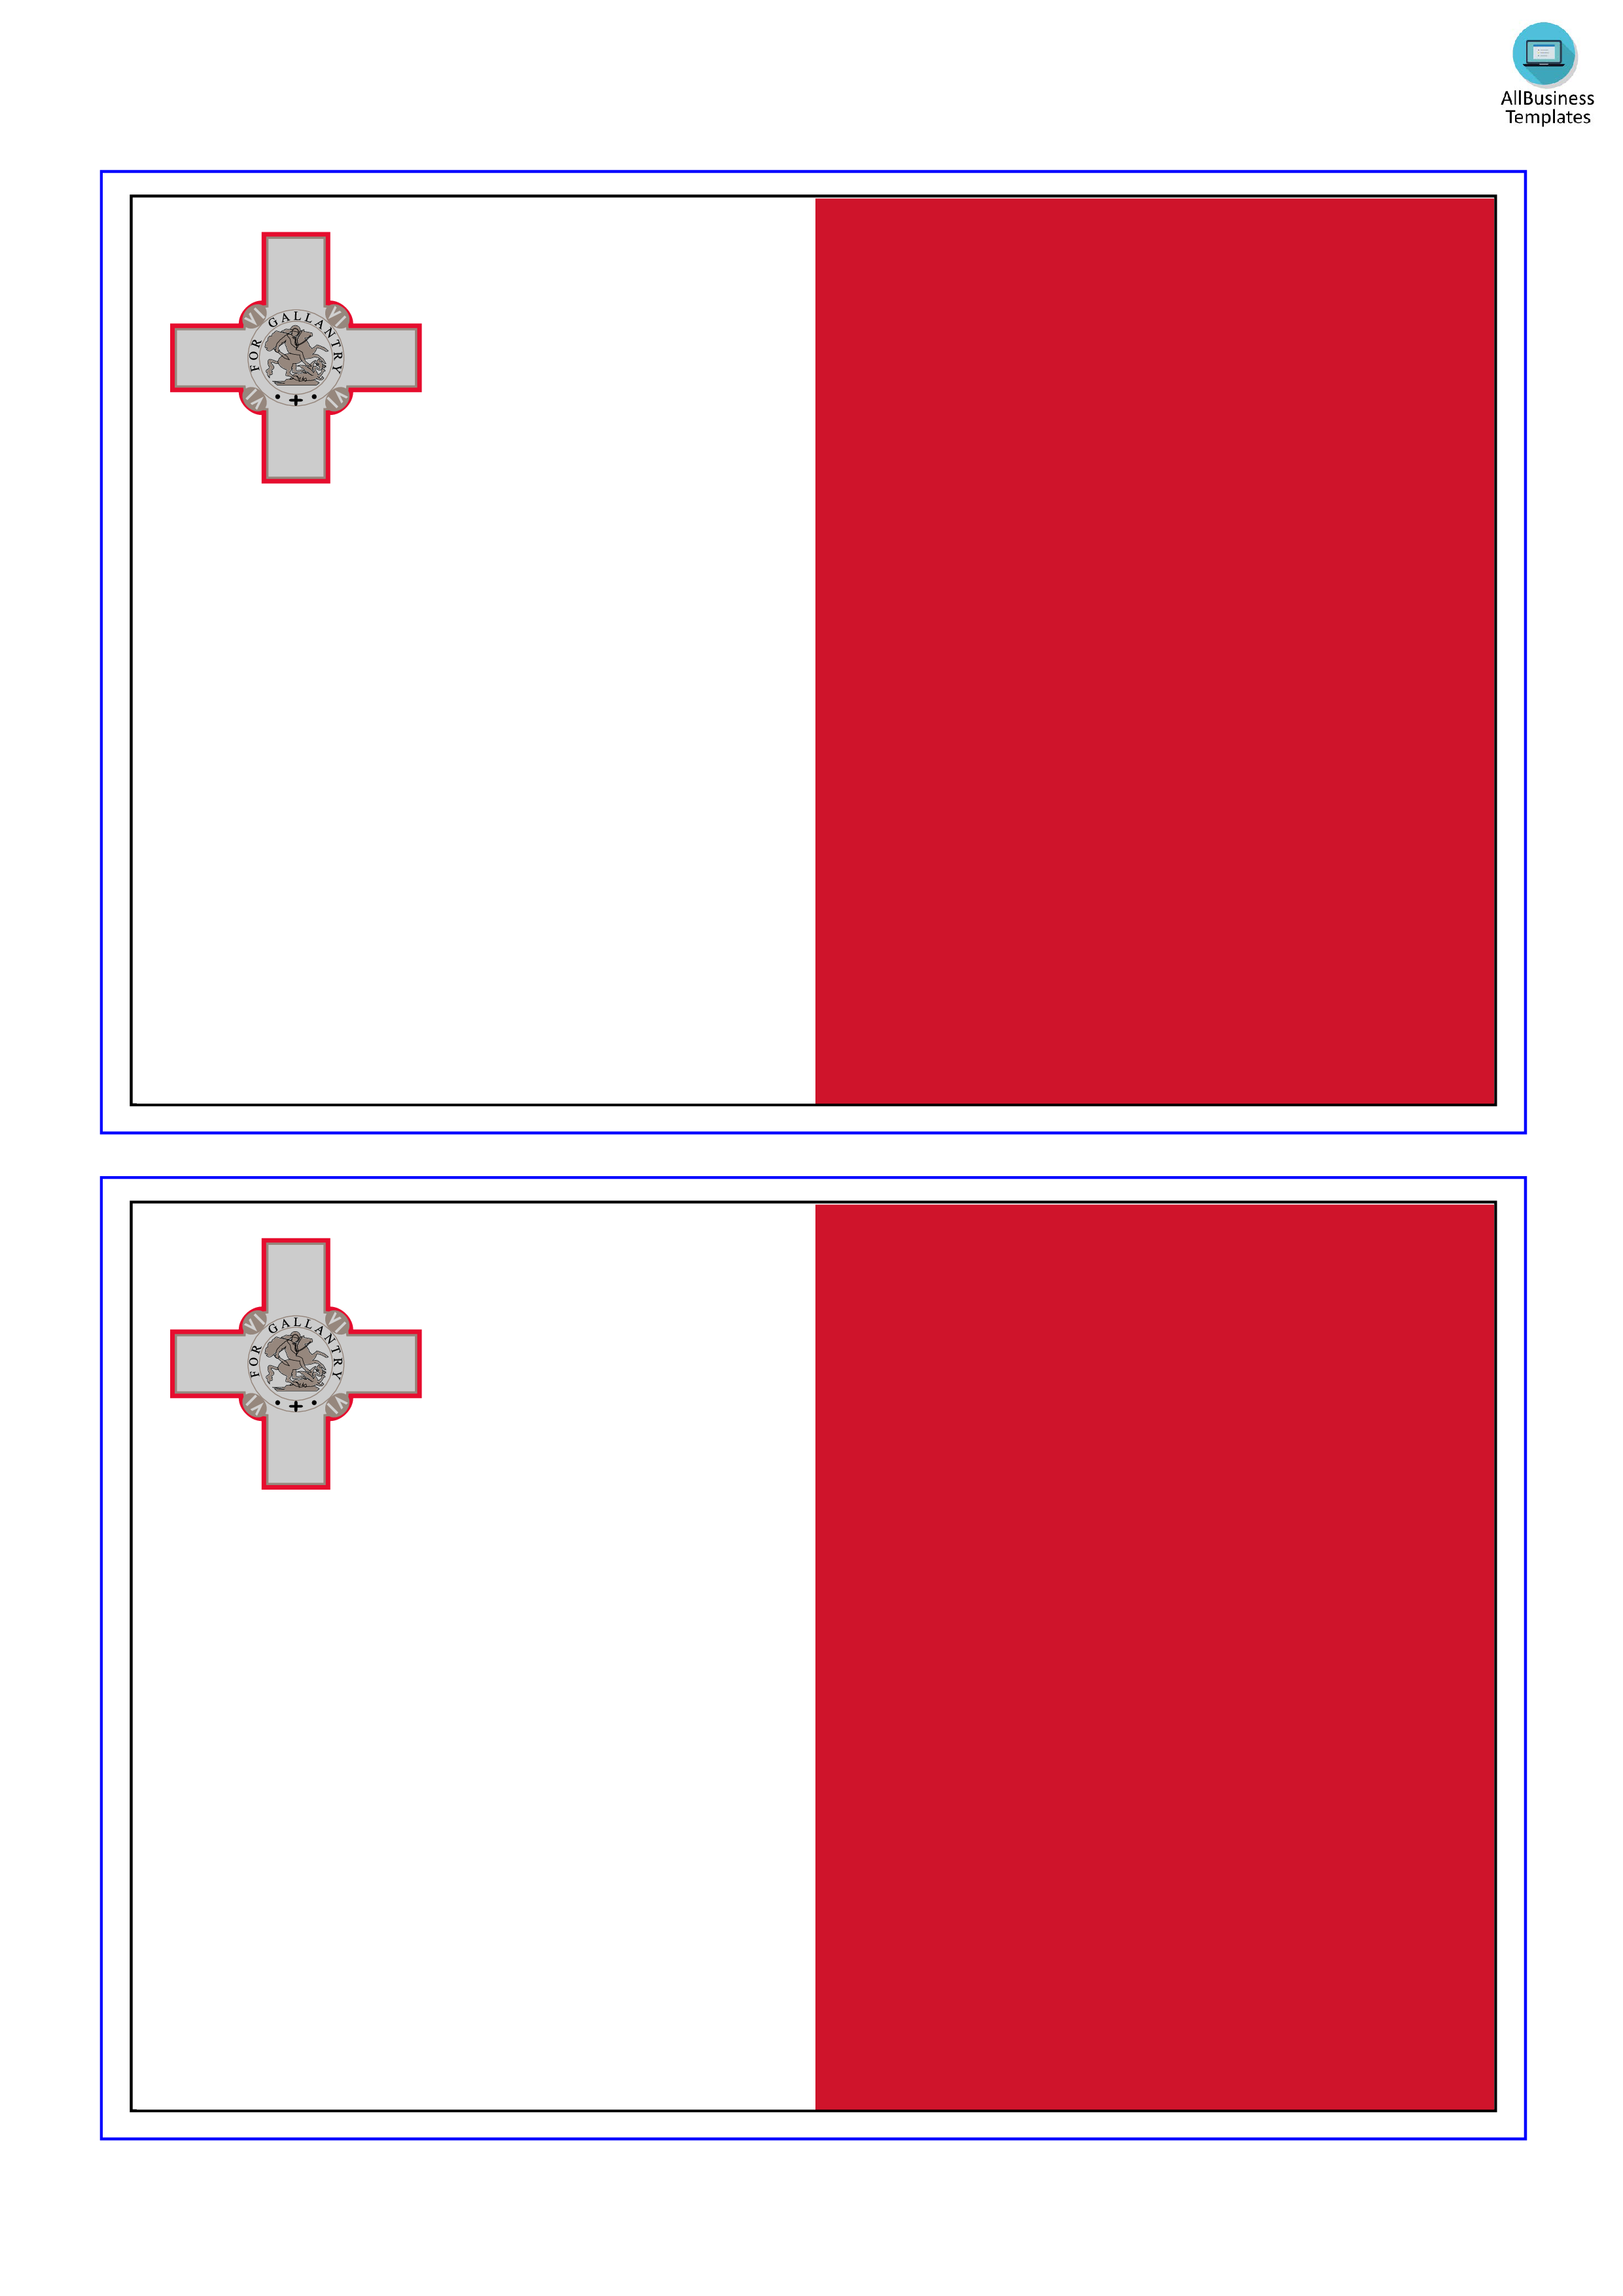 malta flag plantilla imagen principal